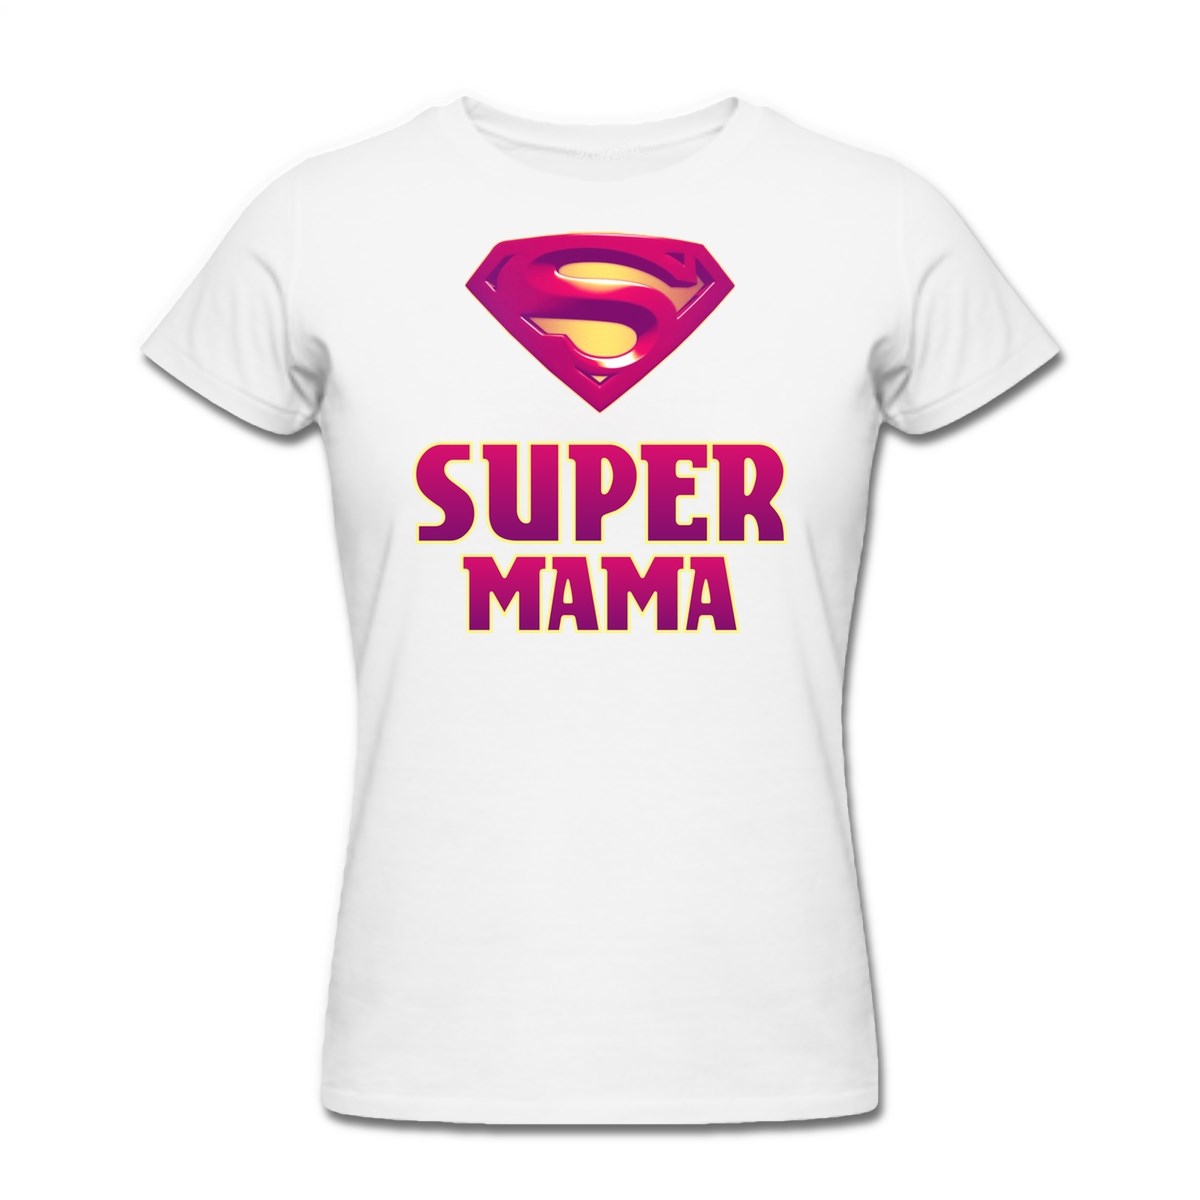 Футболки с надписями можно. Футболка мама. Футболка для мамы с надписью. Футболка супер мама. Смешные надписи на футболках.